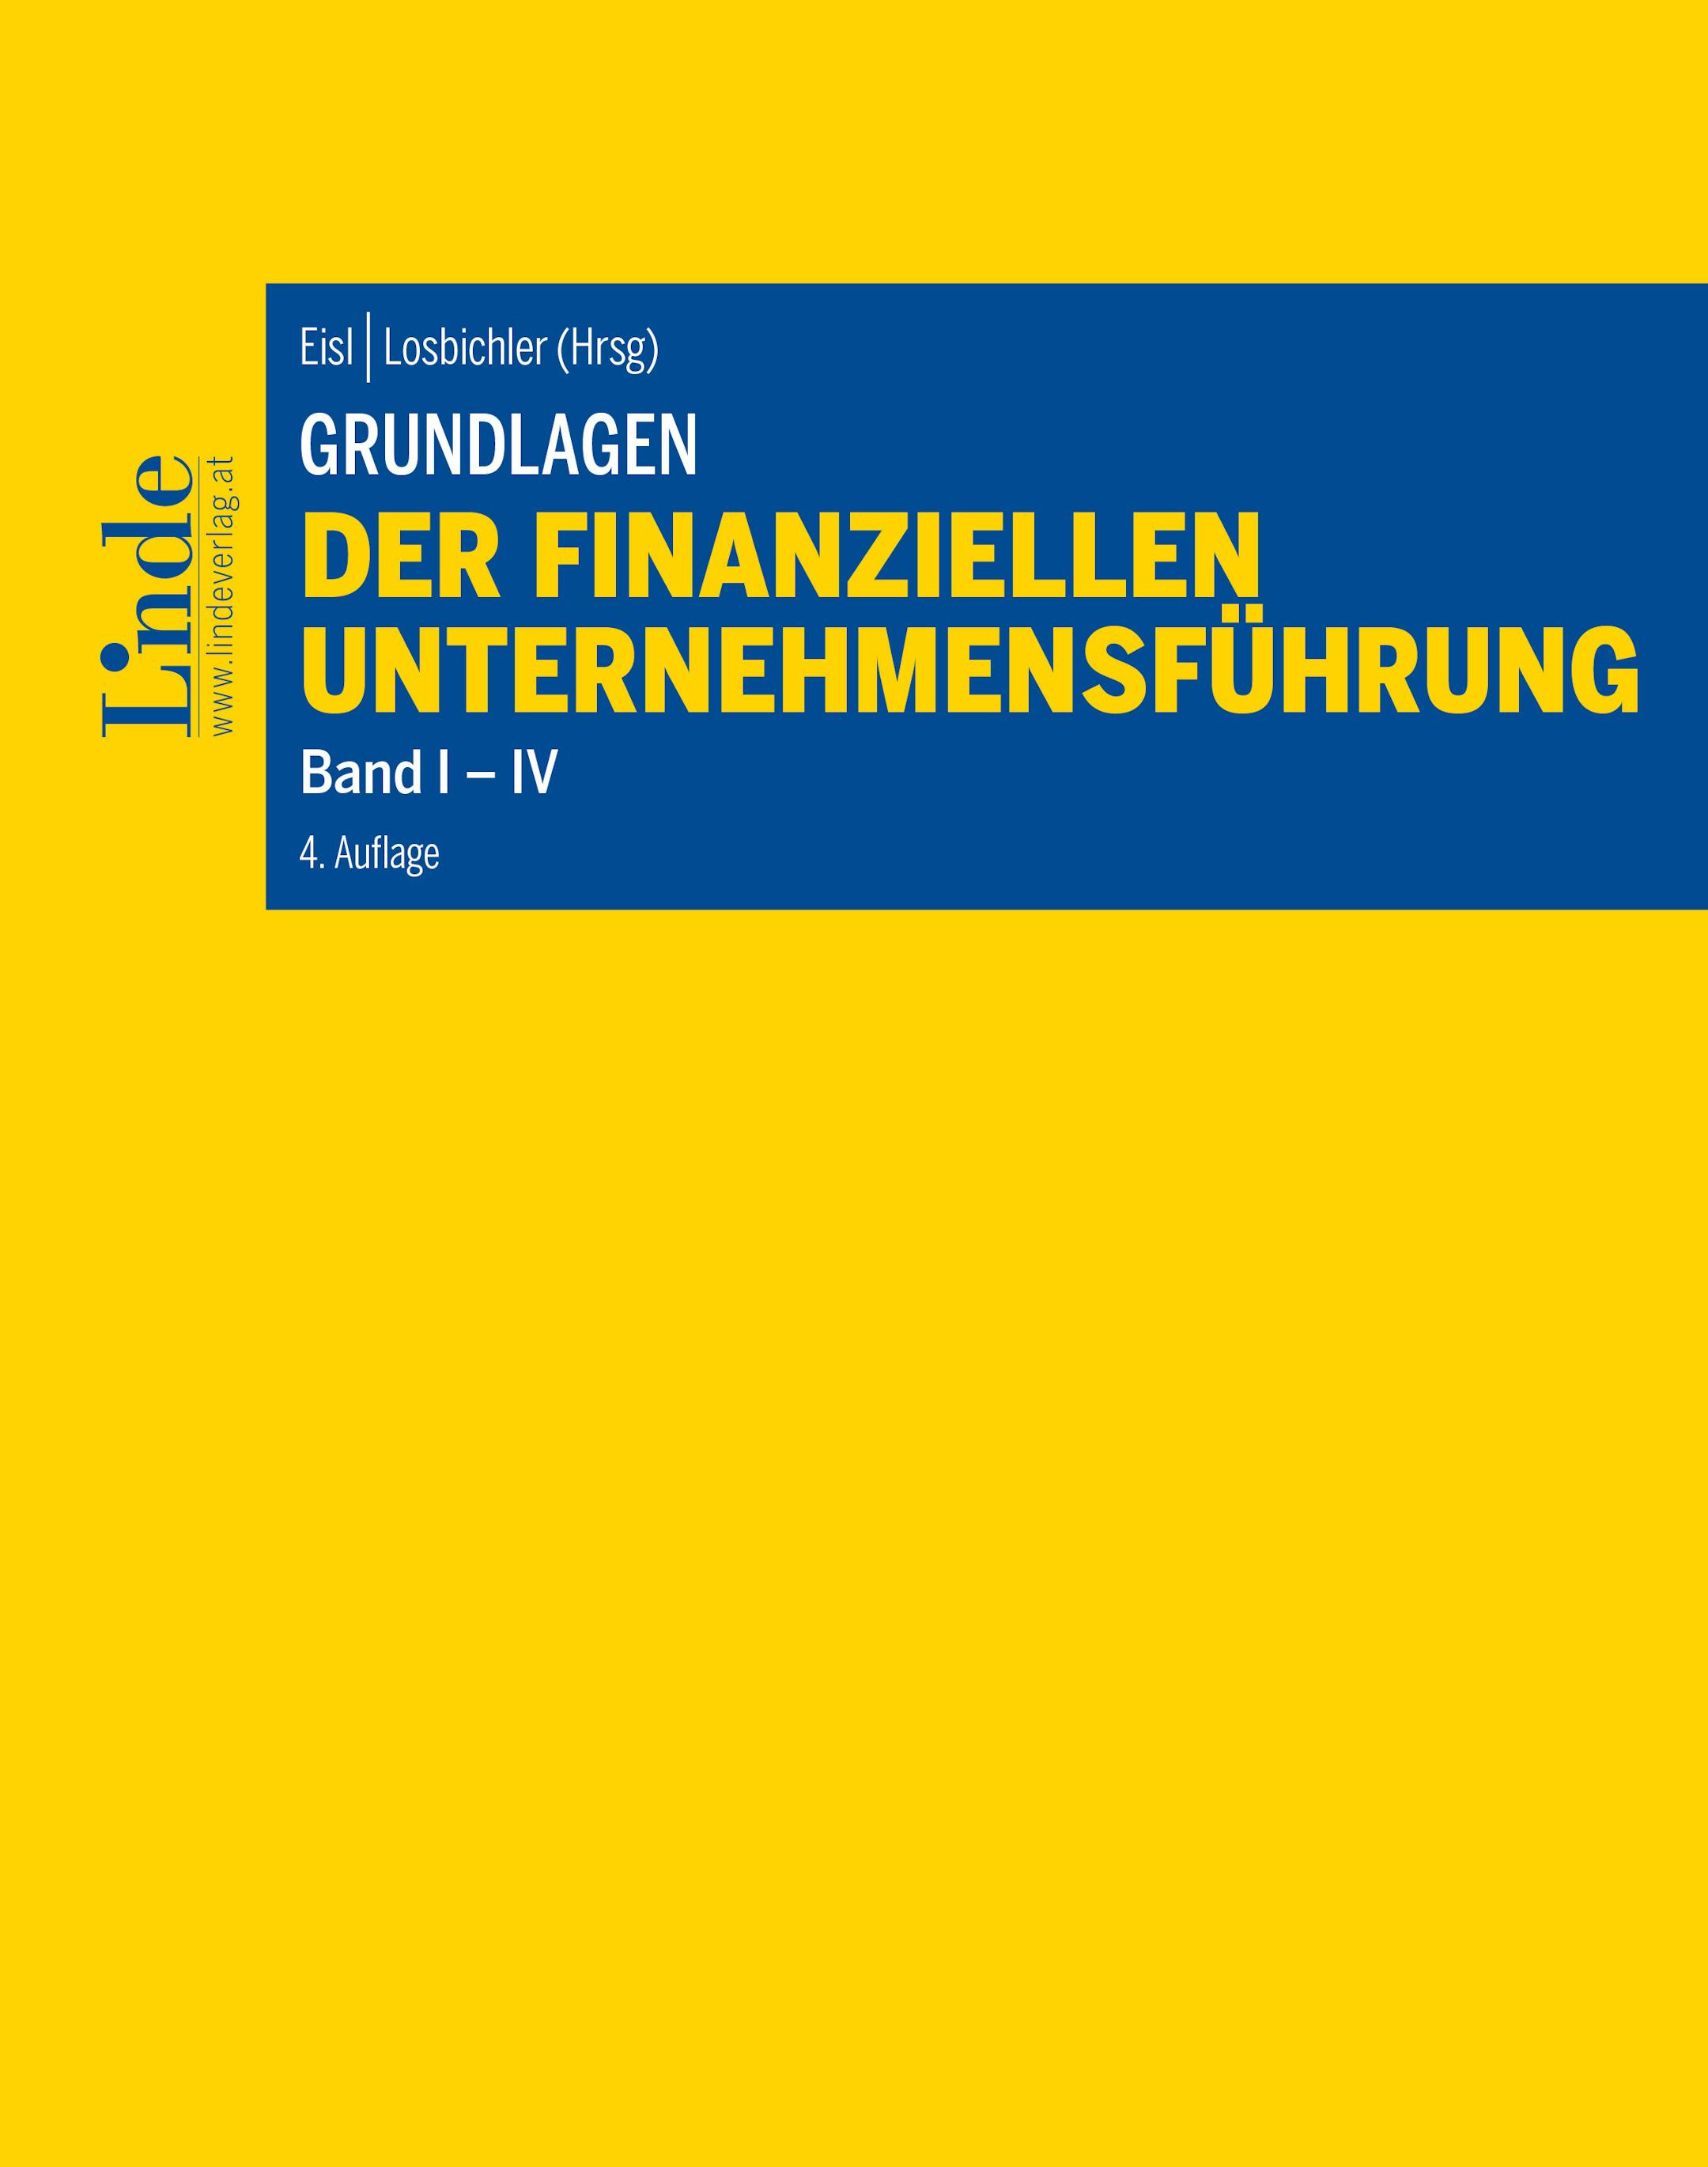 Eisl | Losbichler (Hrsg.)
Grundlagen der finanziellen Unternehmensführung, Band I-IV
Band I-IV
Linde Lehrbuch